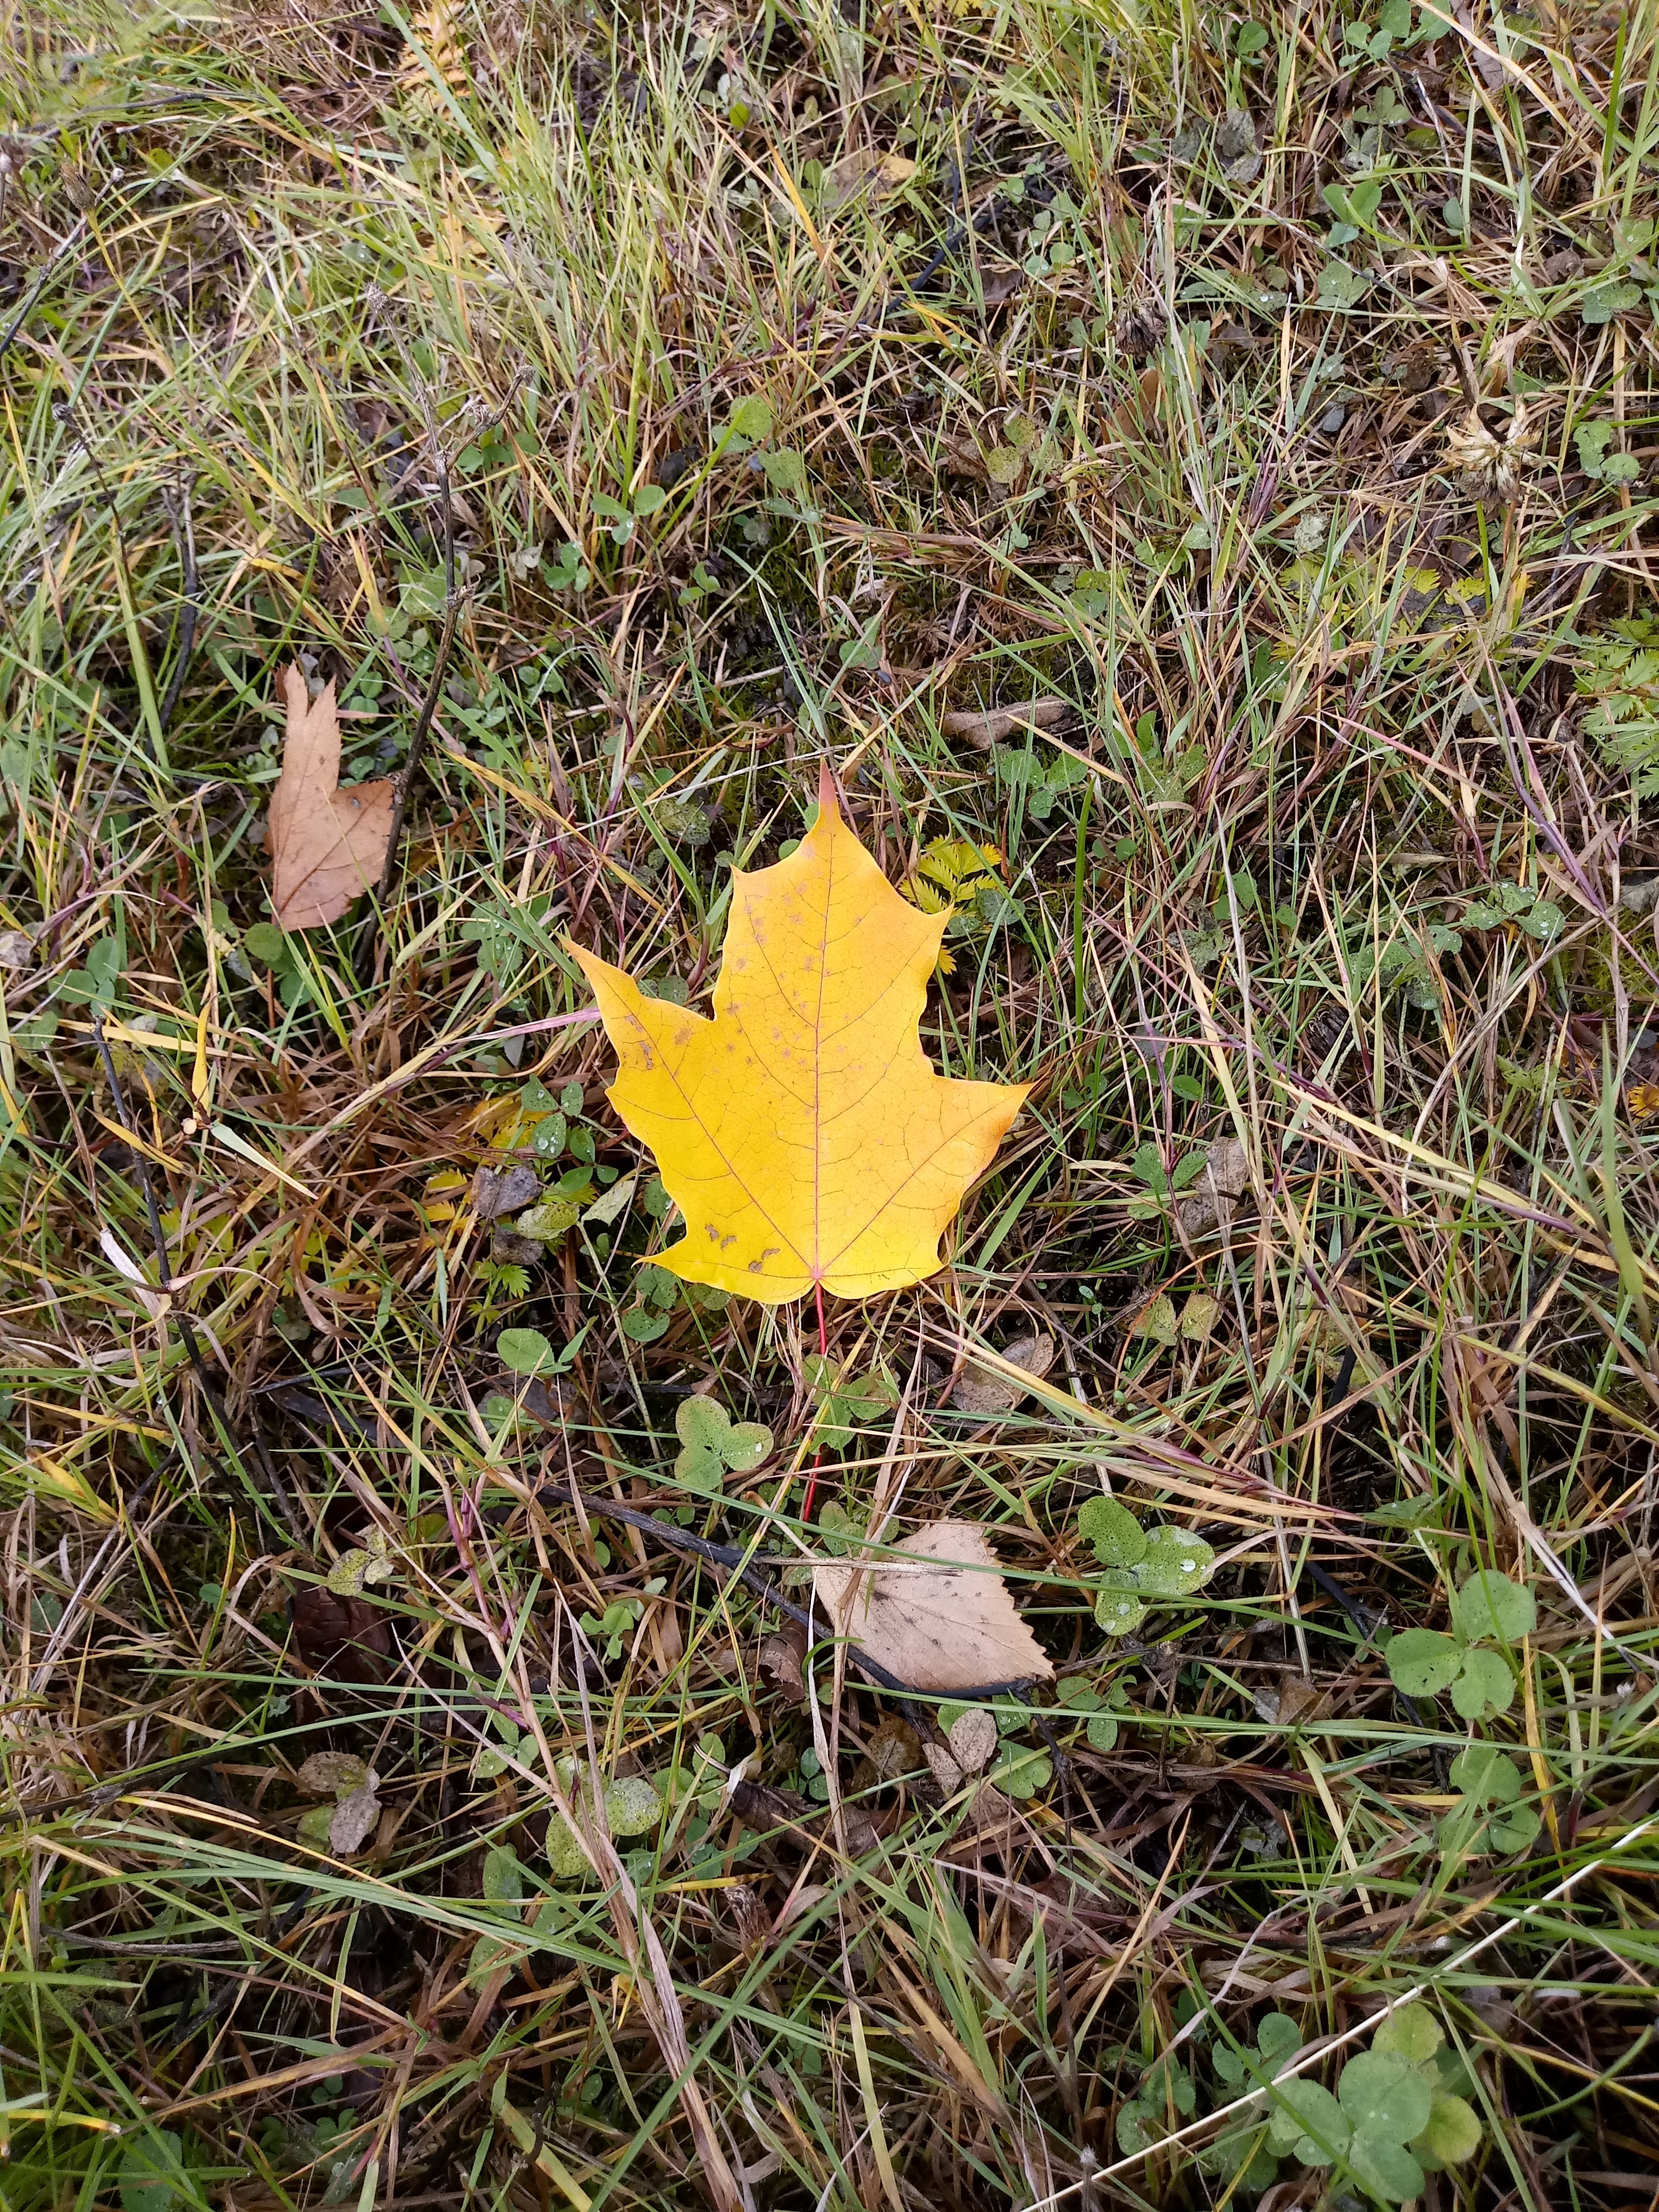 Осенний листок